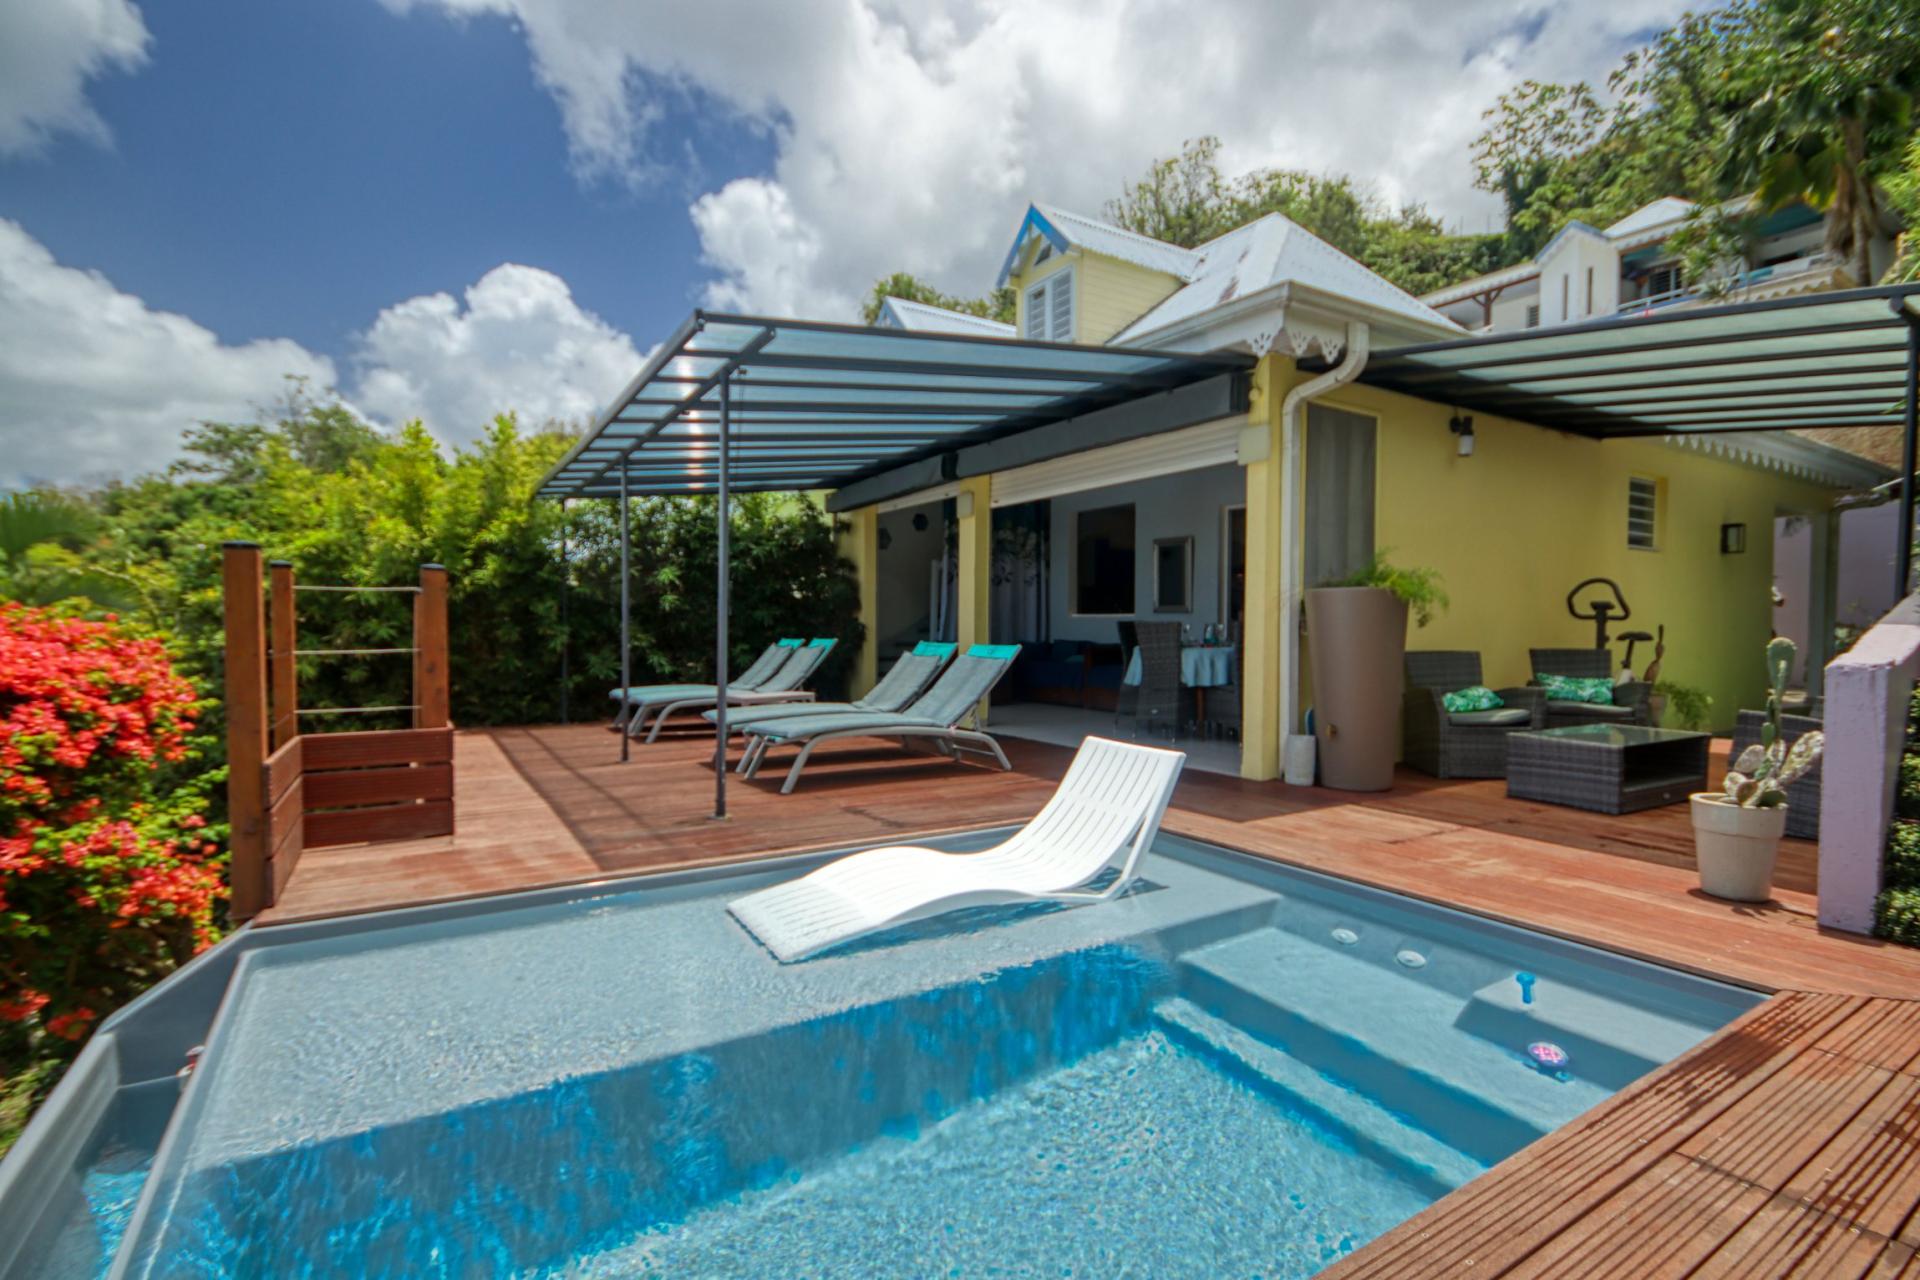 Location villa Martinique - Vue d'ensemble